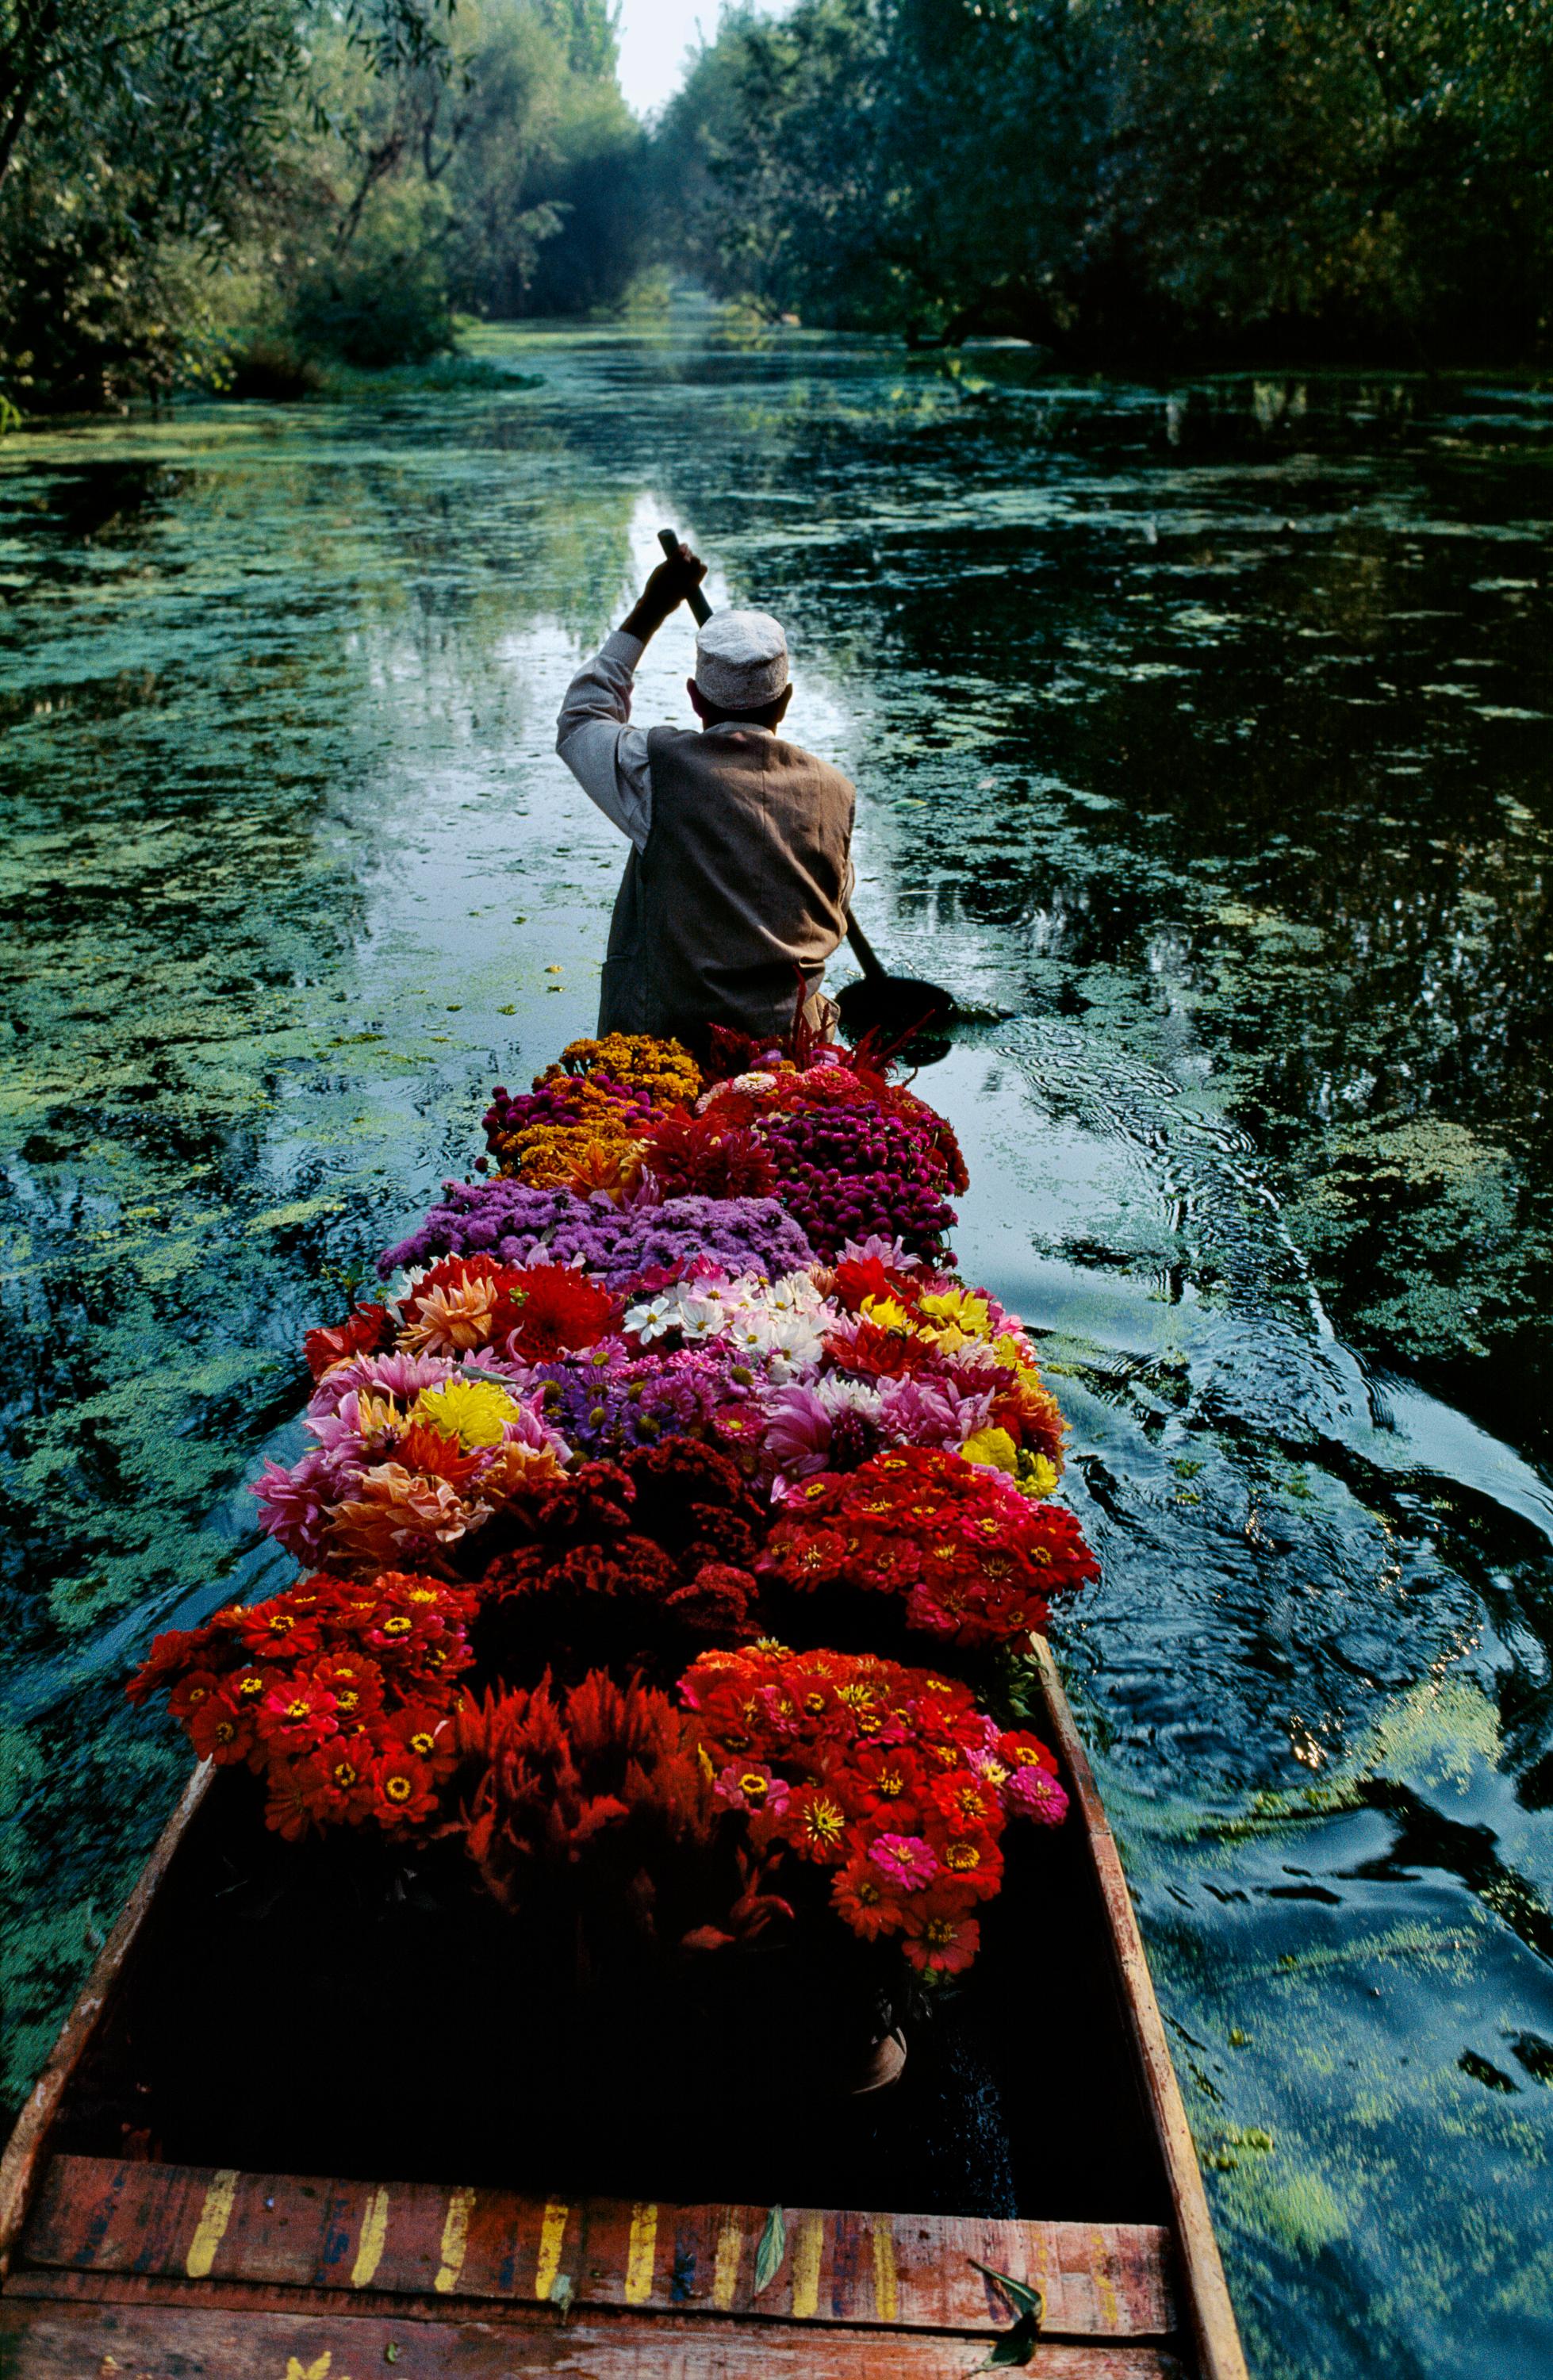 Blumenverkäufer, Dal Lake, Srinigar, Kashmir, 1996 - Steve McCurry 
Signiert und mit dem Label der Fotografenedition versehen und auf der Rückseite nummeriert
Digitaler C-Typ-Druck

20 x 24 Zoll, Auflage: 90
24 x 30 Zoll, Auflage: 75
48 x 72 Zoll,